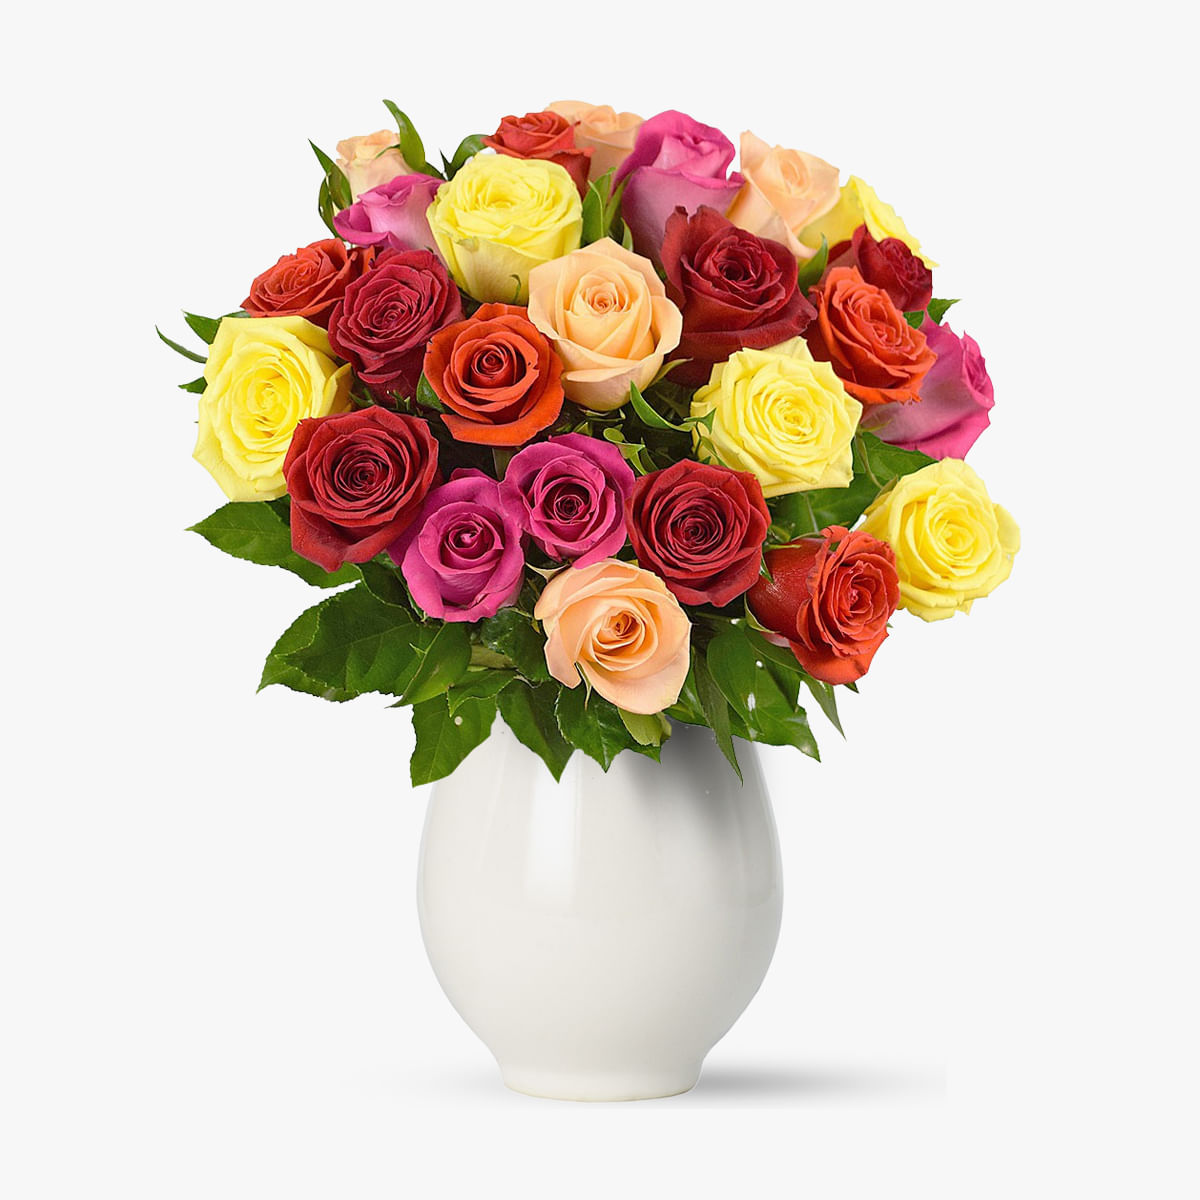 Buchet de 25 trandafiri multicolori – Standard Buchet imagine 2022